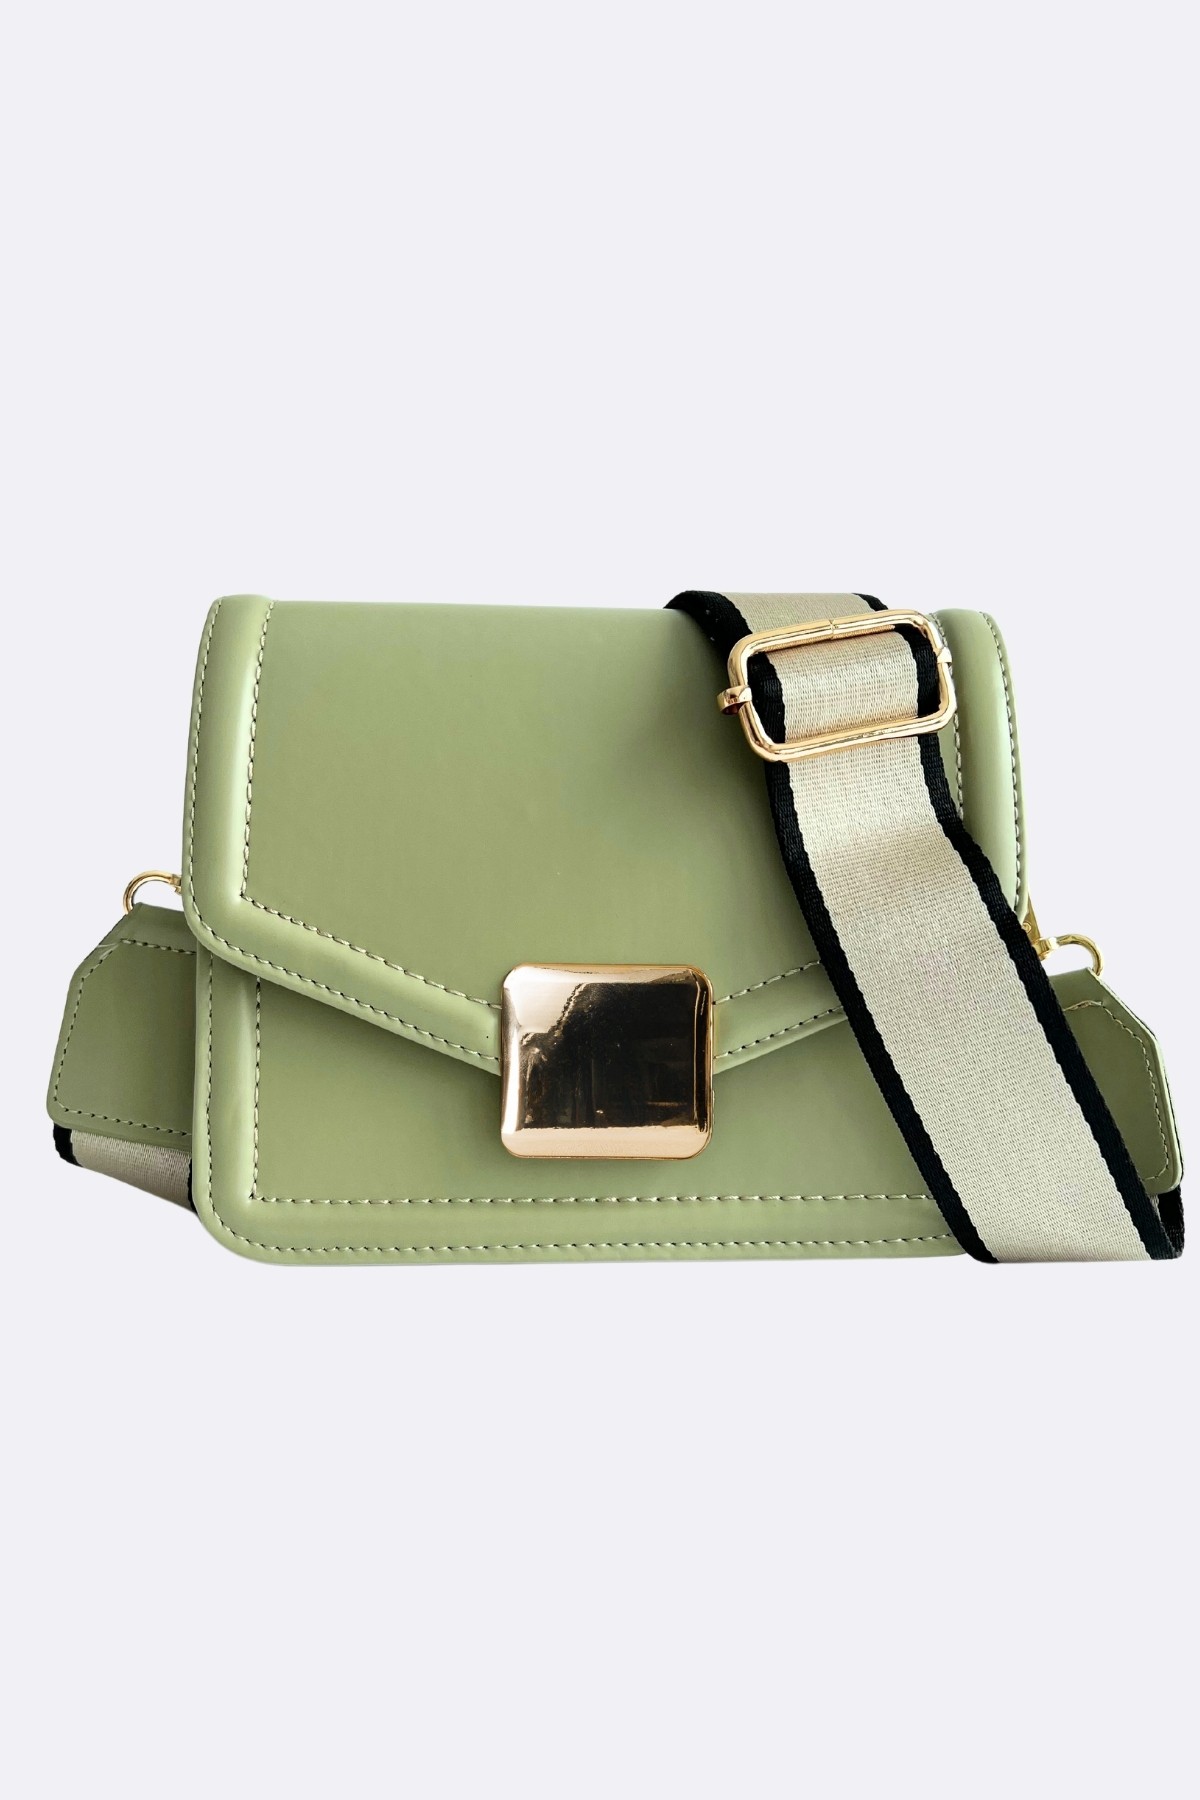 Frame Baget Çanta - Çağla Yeşili